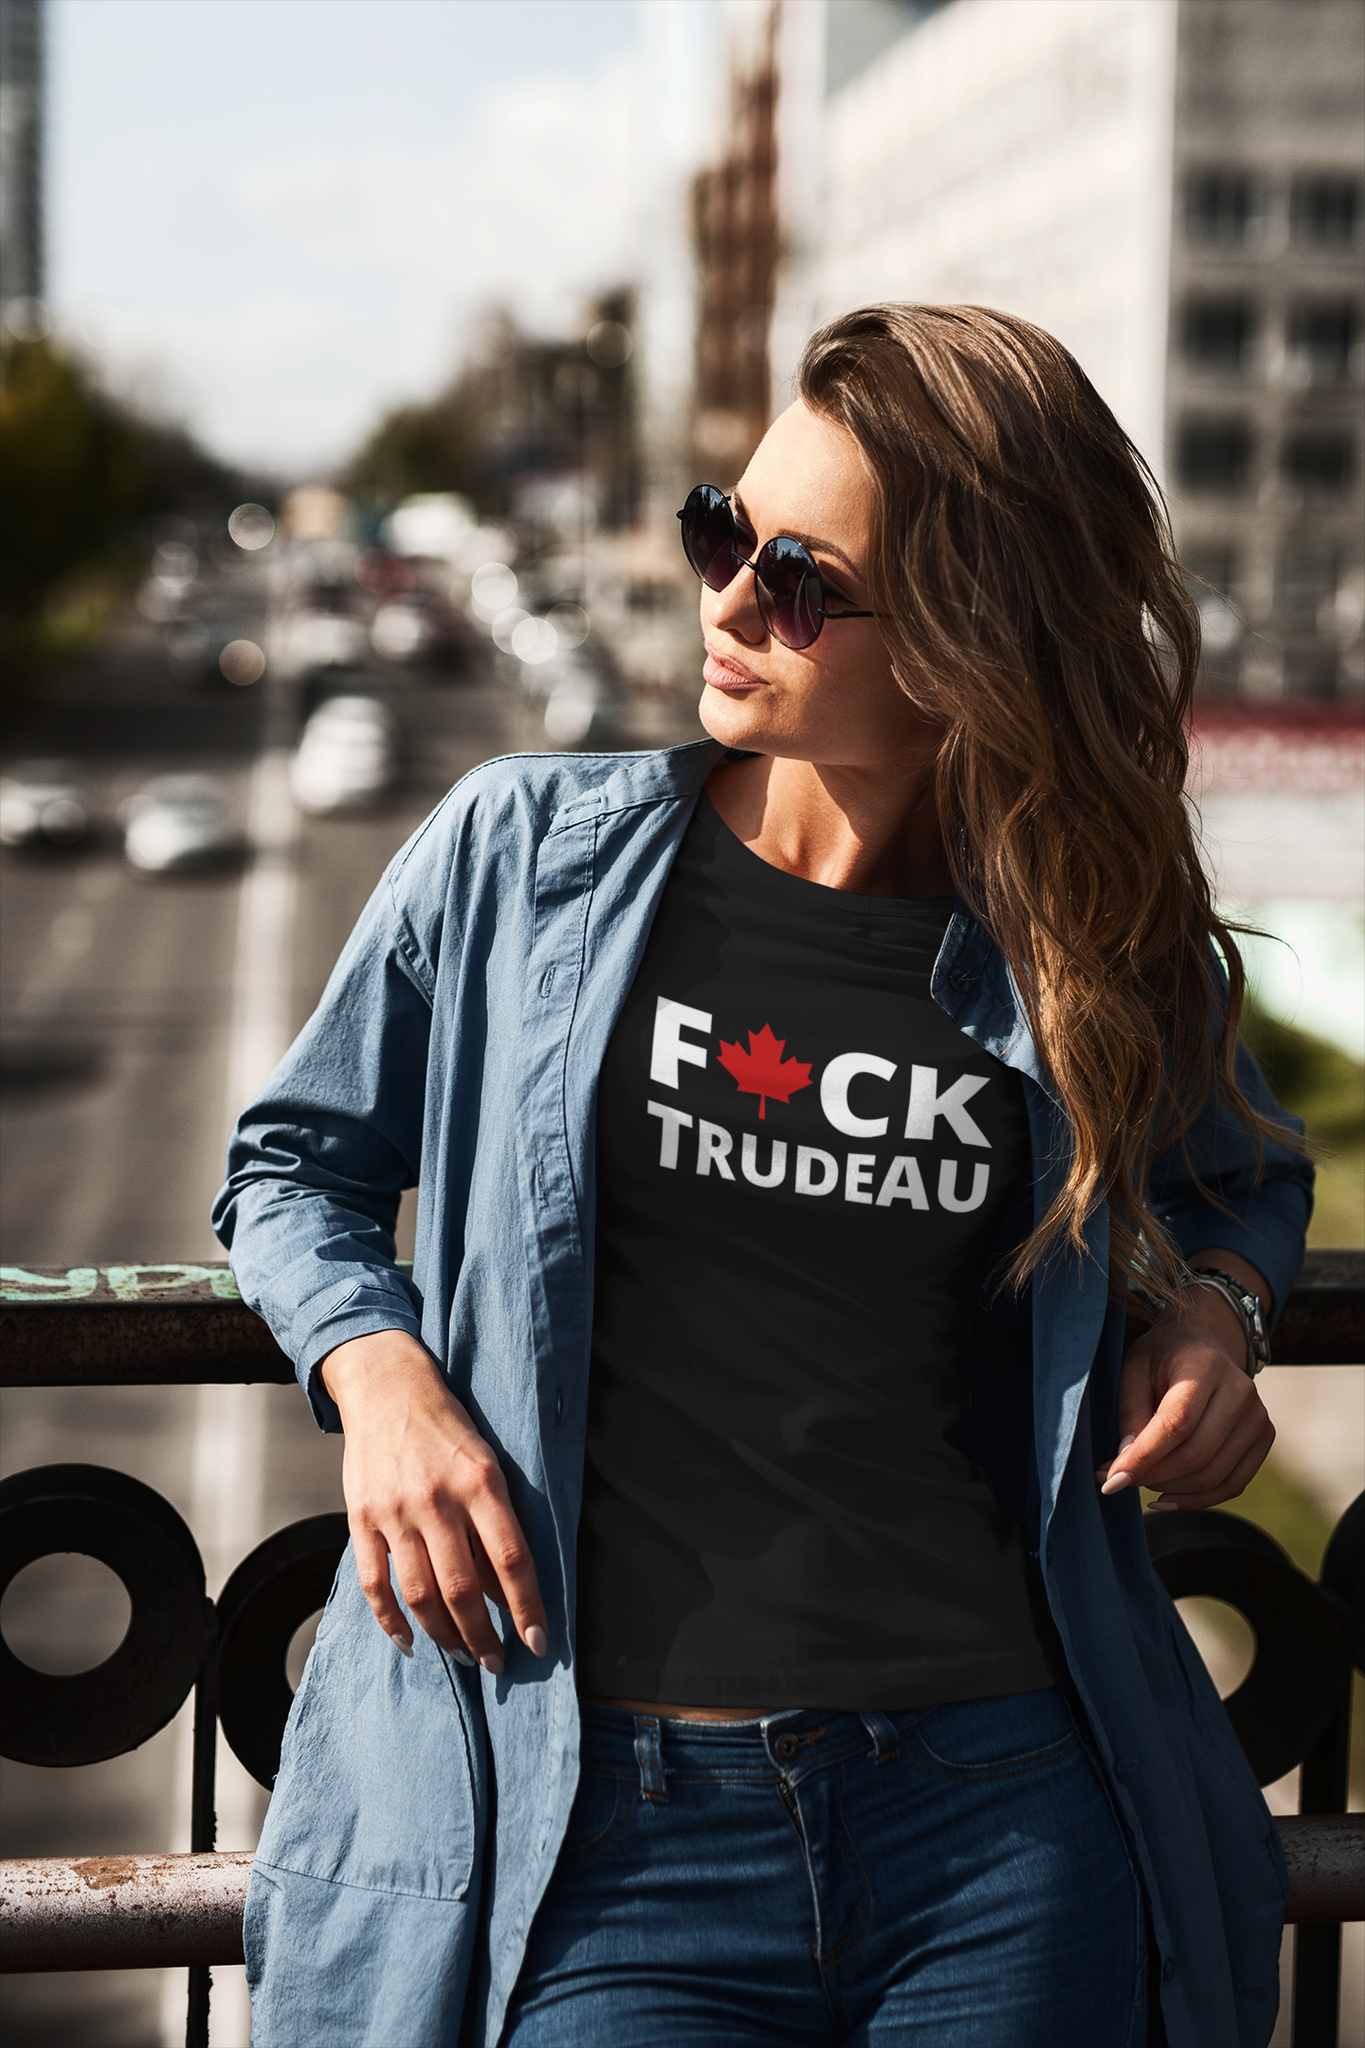 Fuck Trudeau T-Shirt, Trudeau måste ta sitt ansvar för hans handlingar